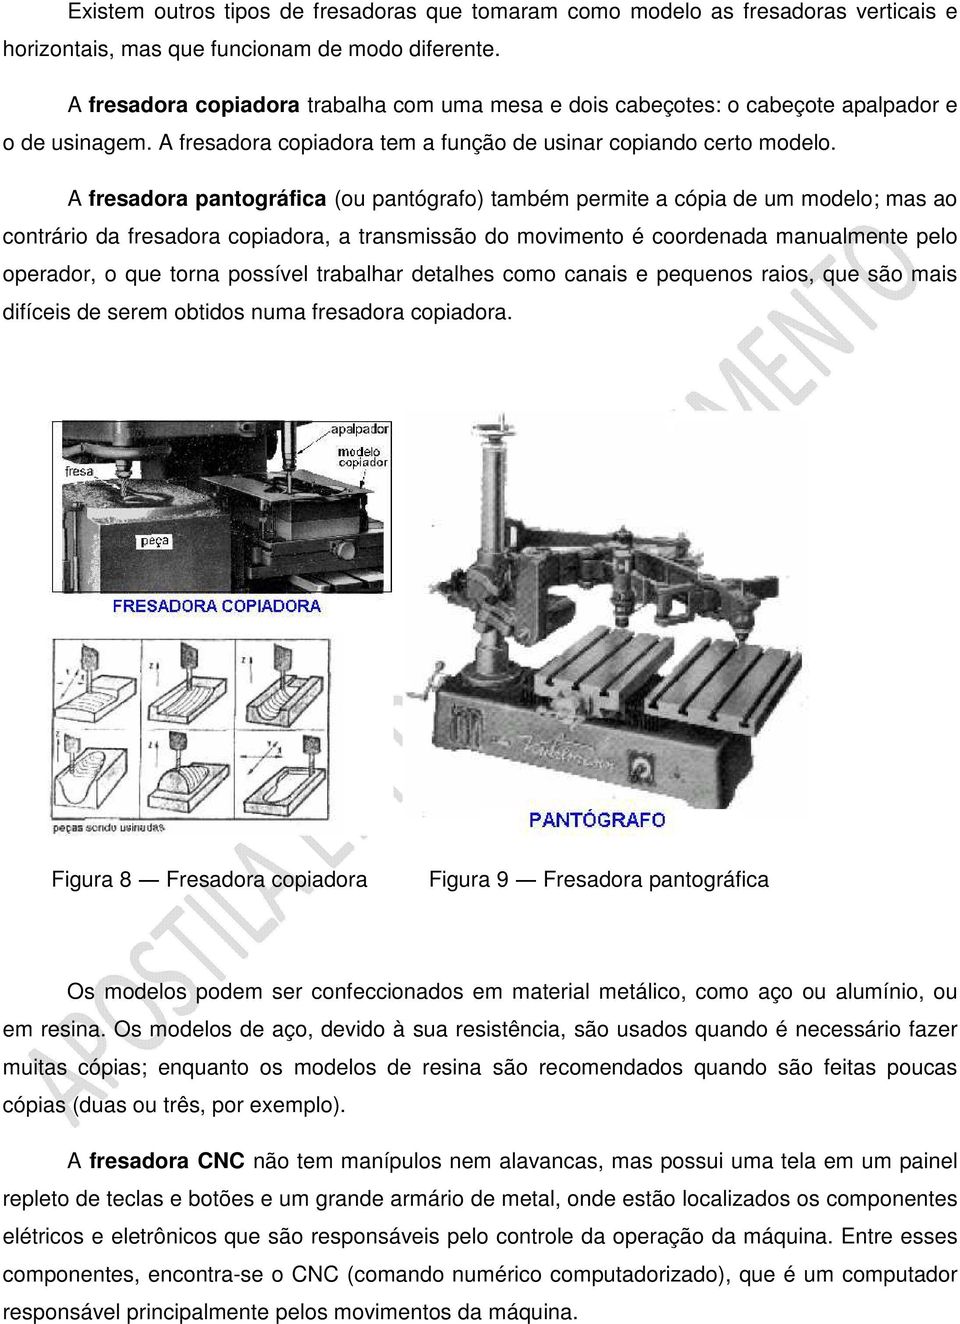 A fresadora pantográfica (ou pantógrafo) também permite a cópia de um modelo; mas ao contrário da fresadora copiadora, a transmissão do movimento é coordenada manualmente pelo operador, o que torna